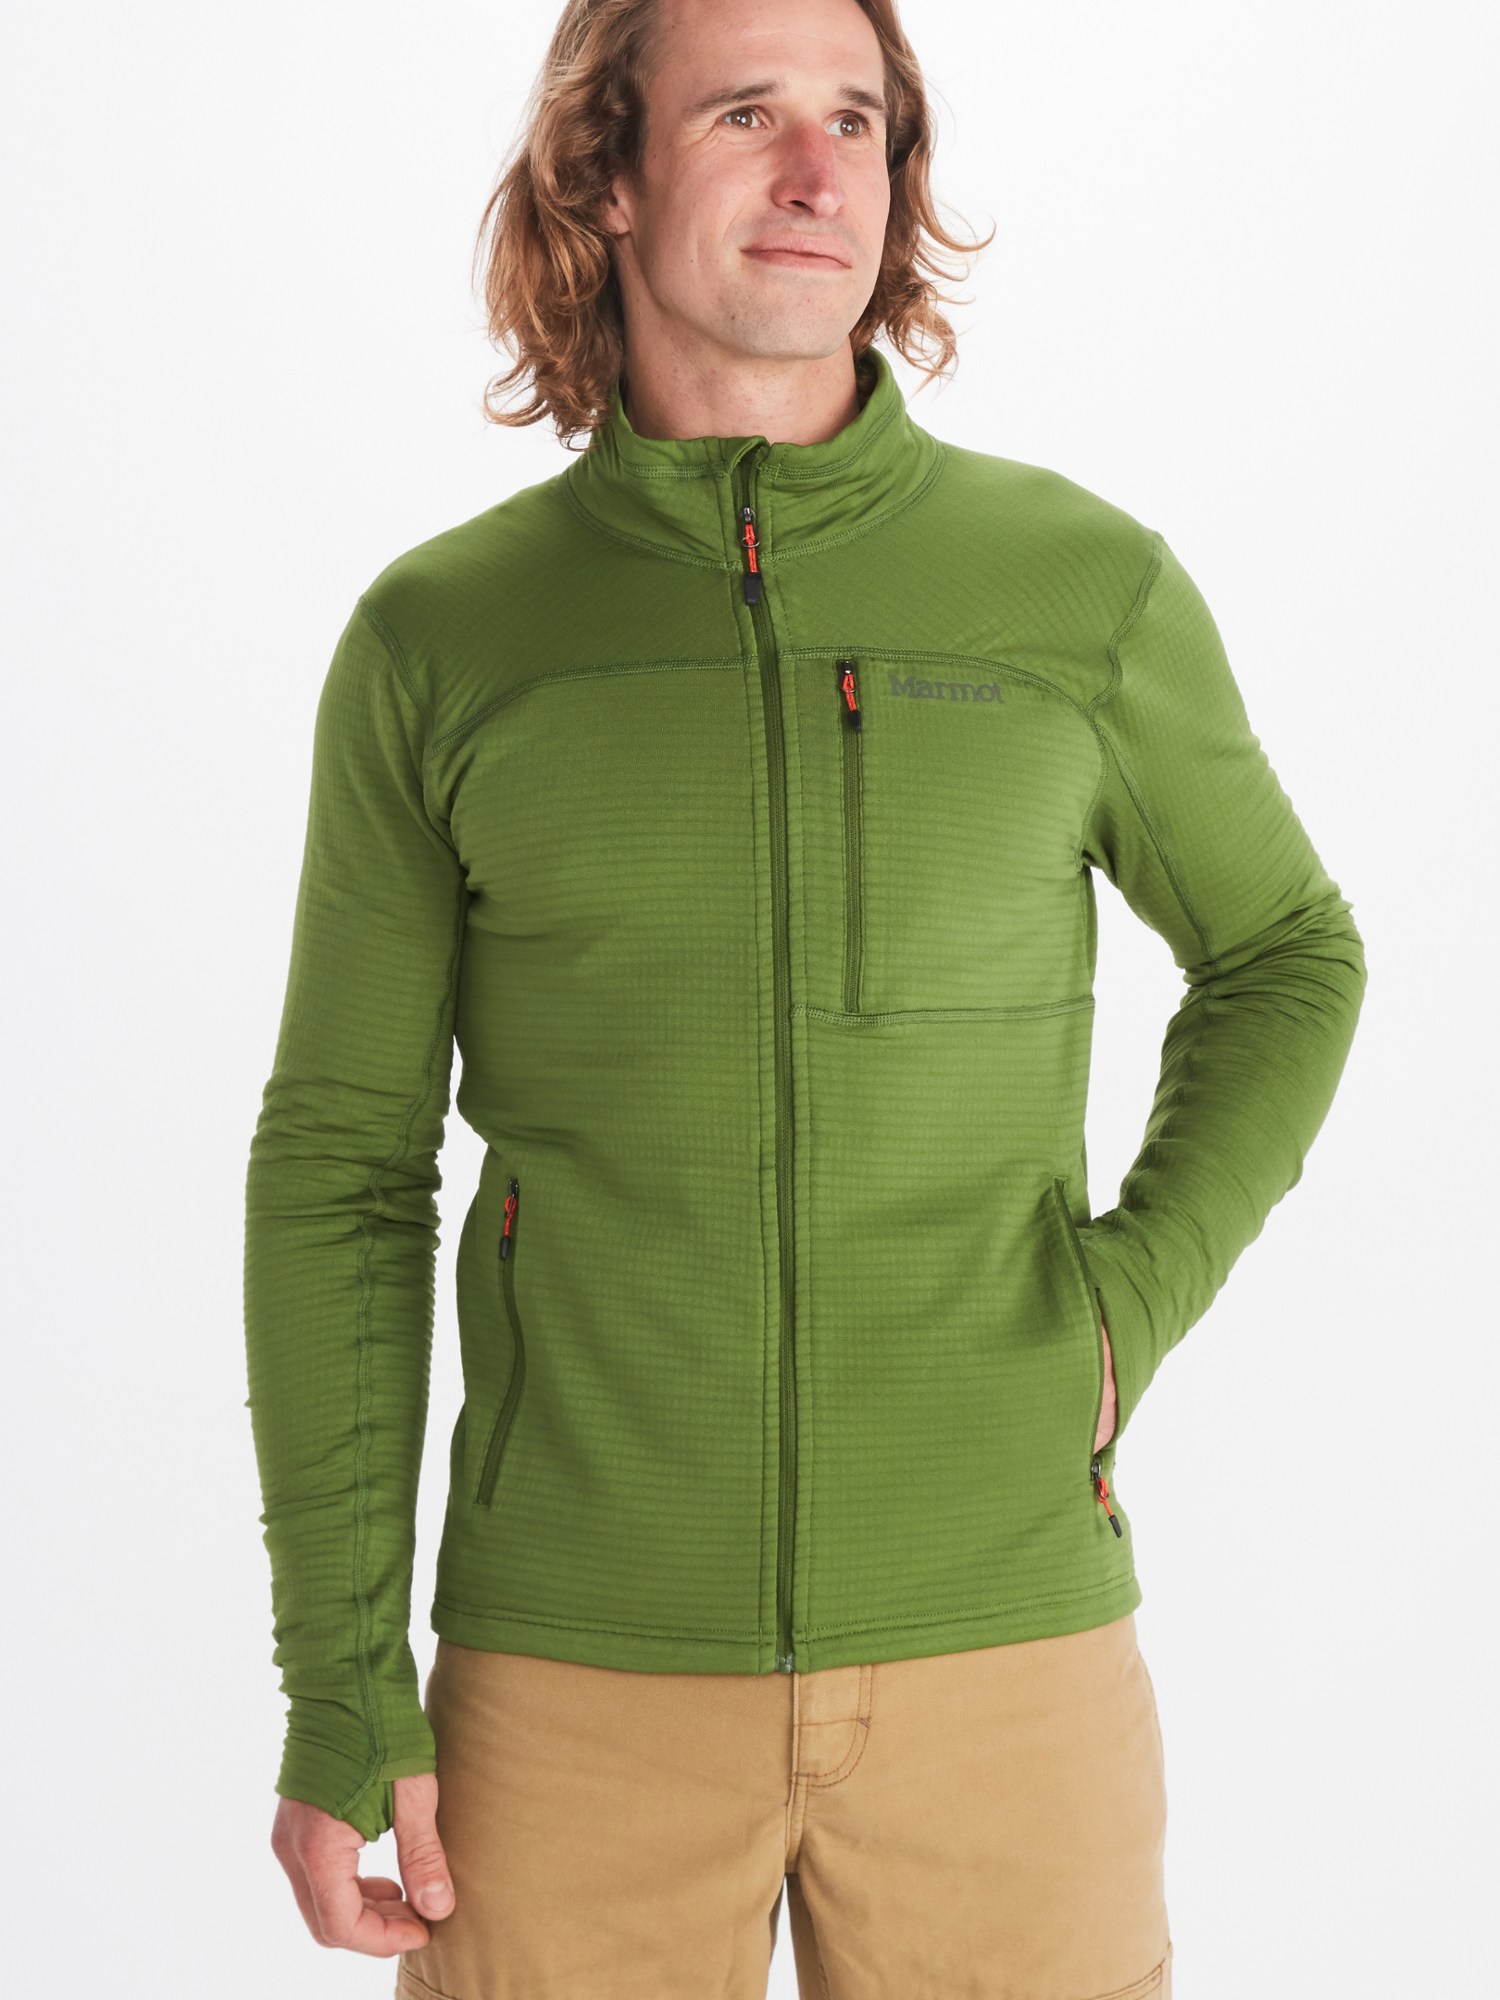 Флисовая куртка Preon - Мужская Marmot, зеленый